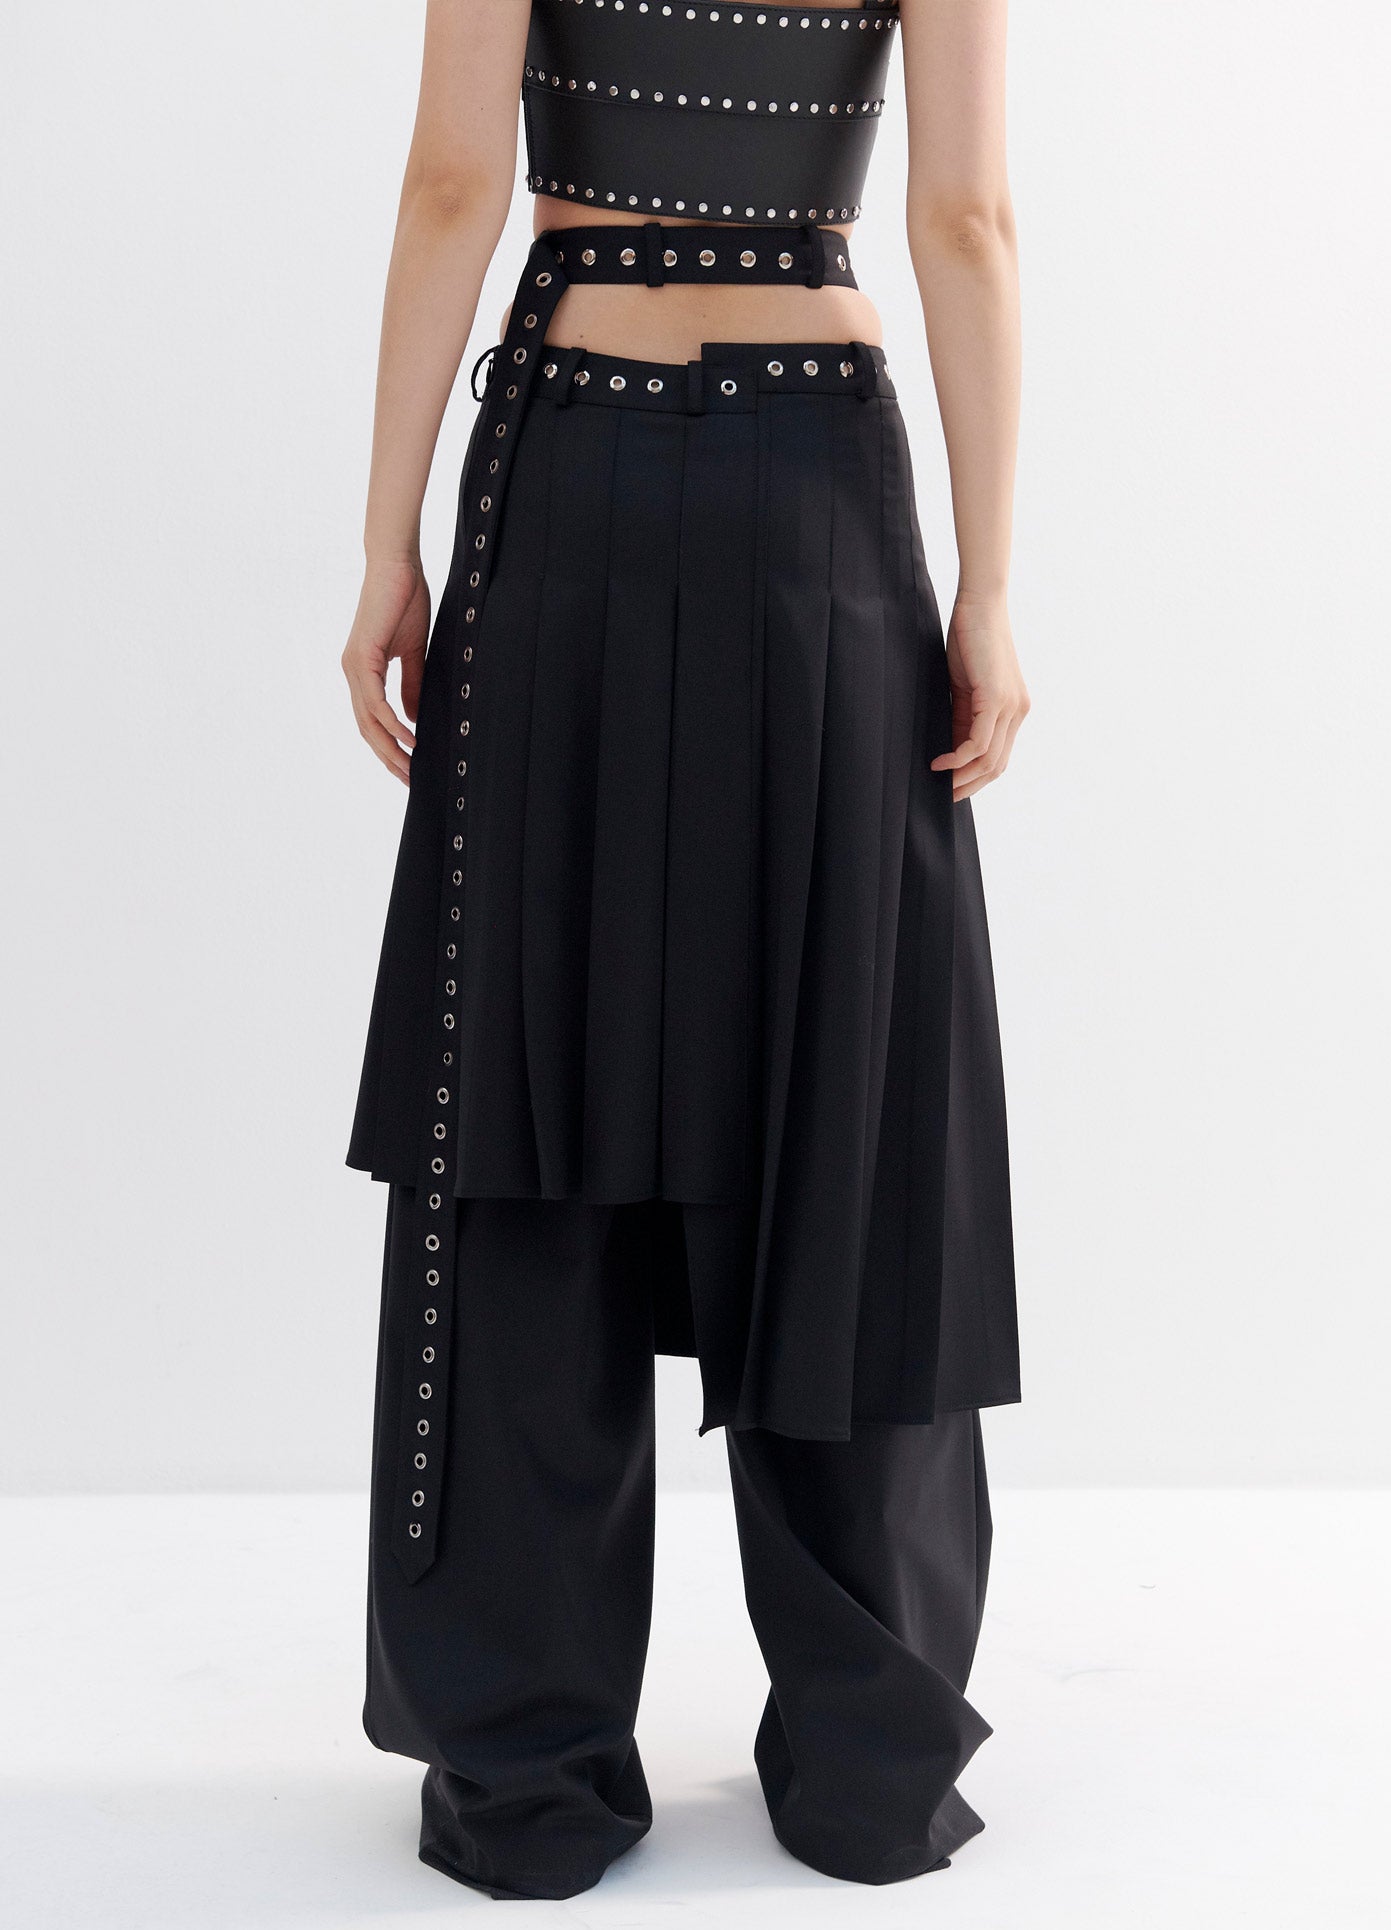 MONSE Pleated Criss Cross Waist Trouser Skirt in Black on Model Back View